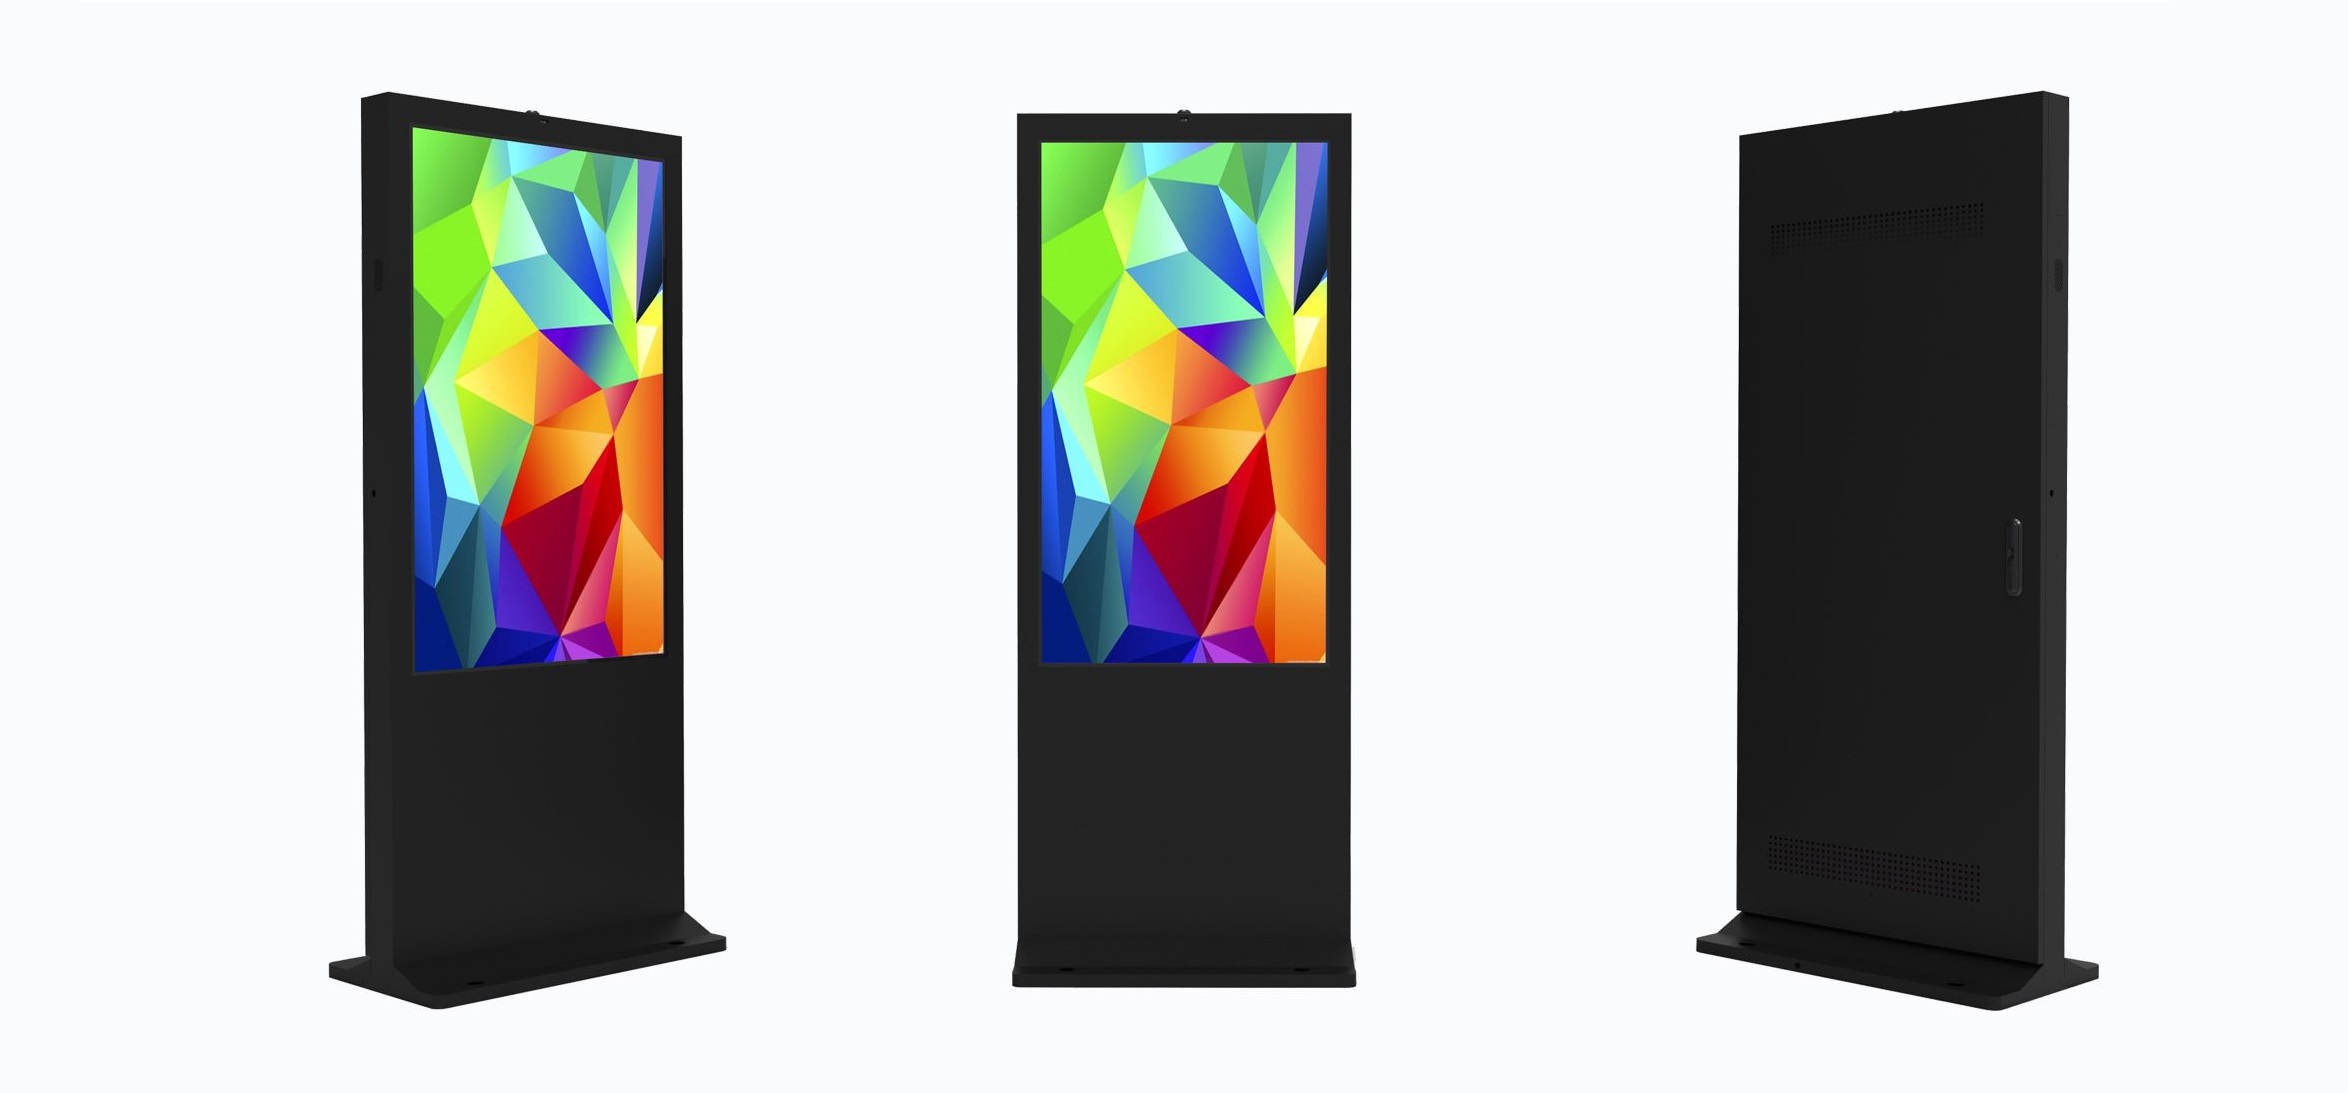 Aký dôvod spôsobia čierne obrazovky vonkajších reklamných automatov?